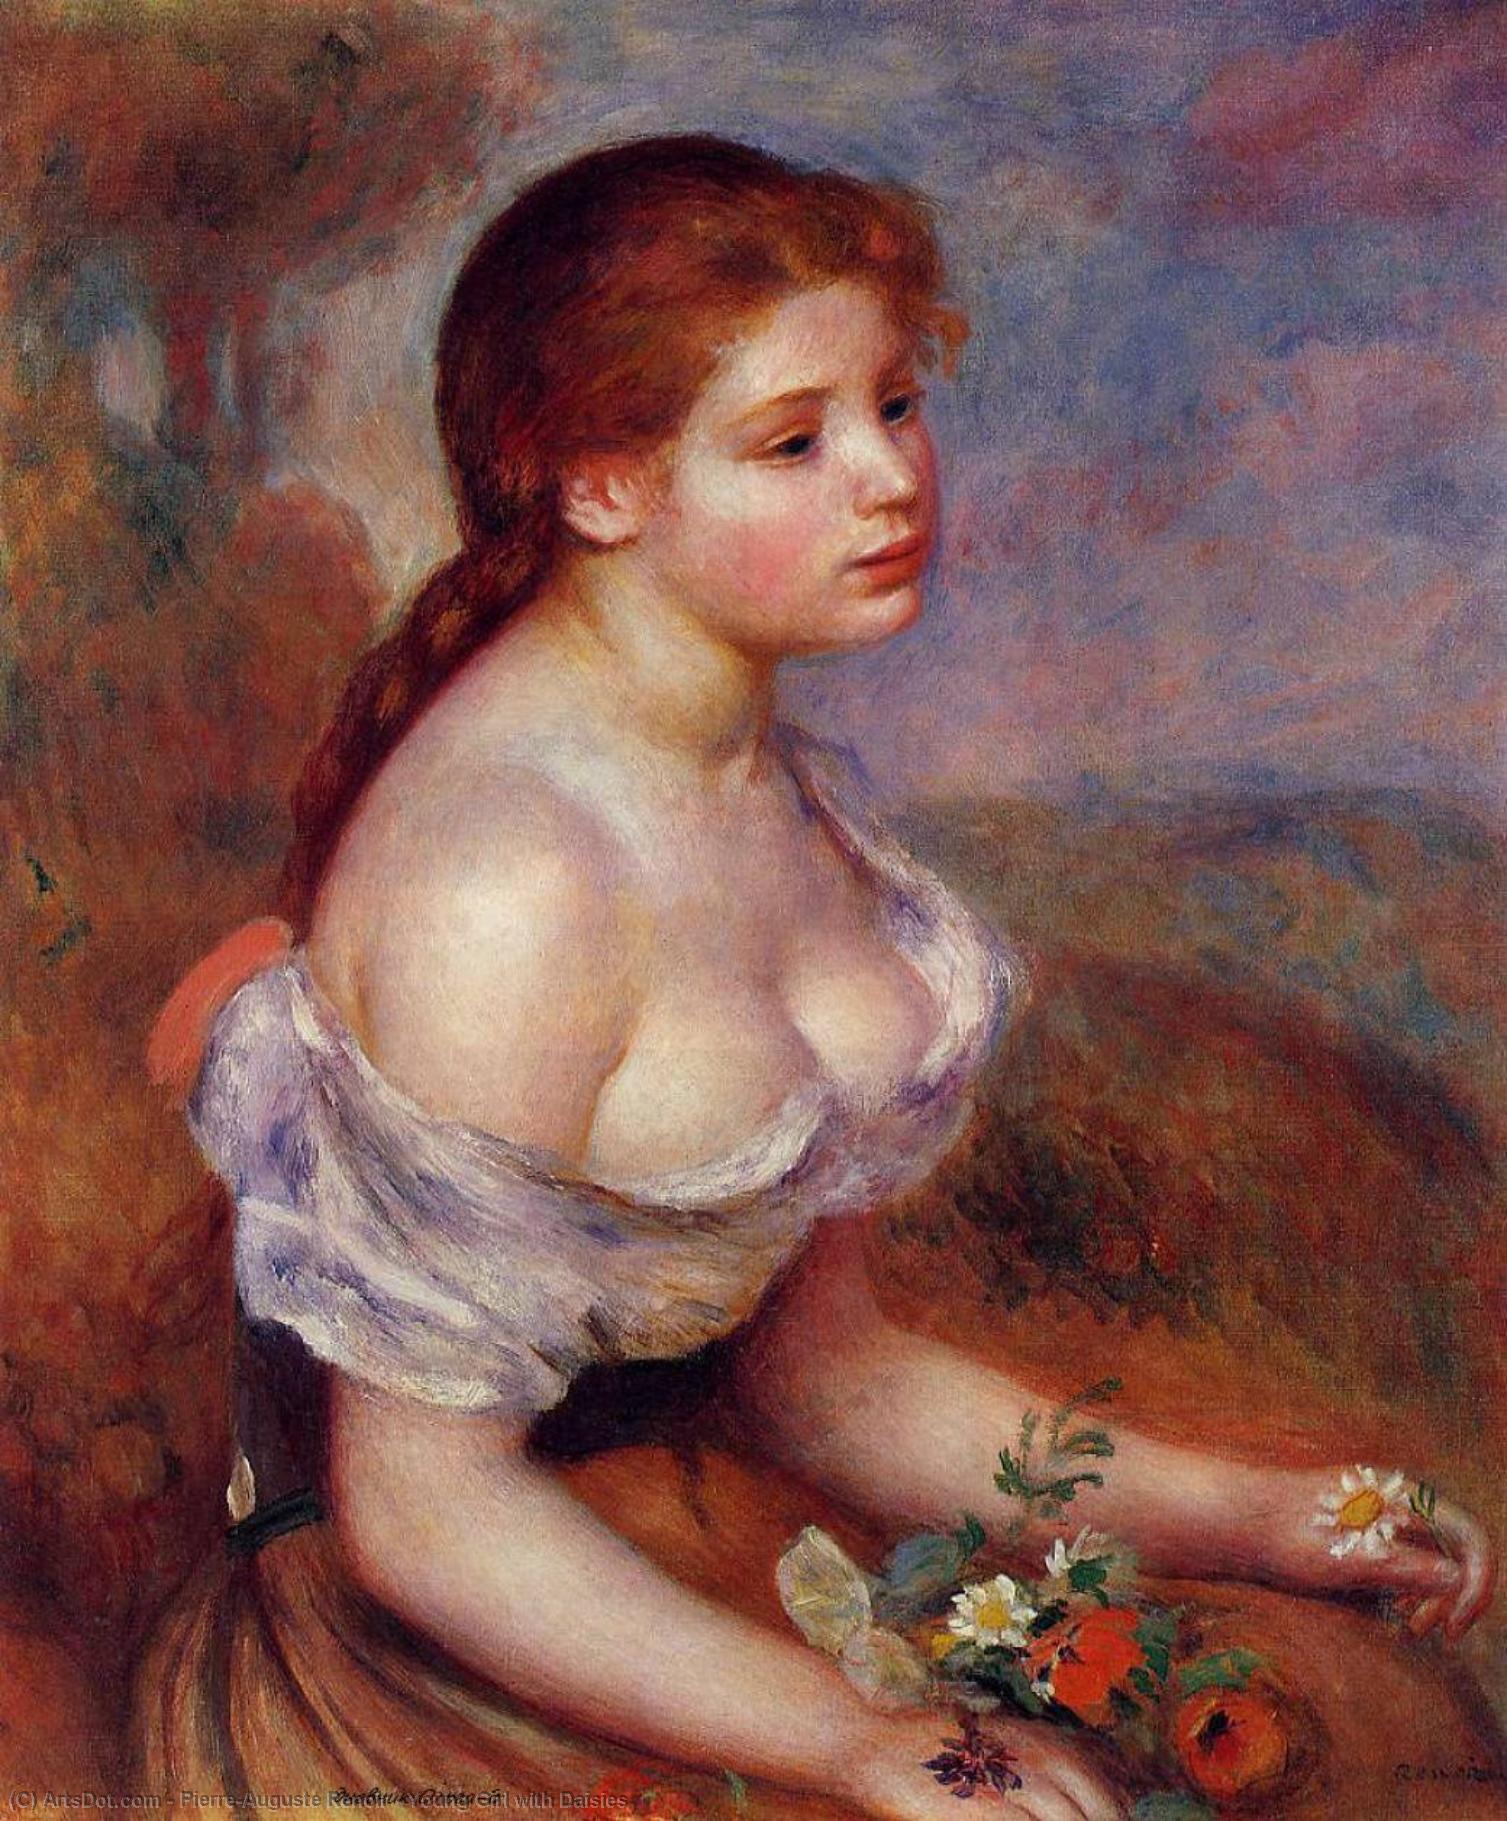 WikiOO.org - Encyclopedia of Fine Arts - Målning, konstverk Pierre-Auguste Renoir - Young Girl with Daisies